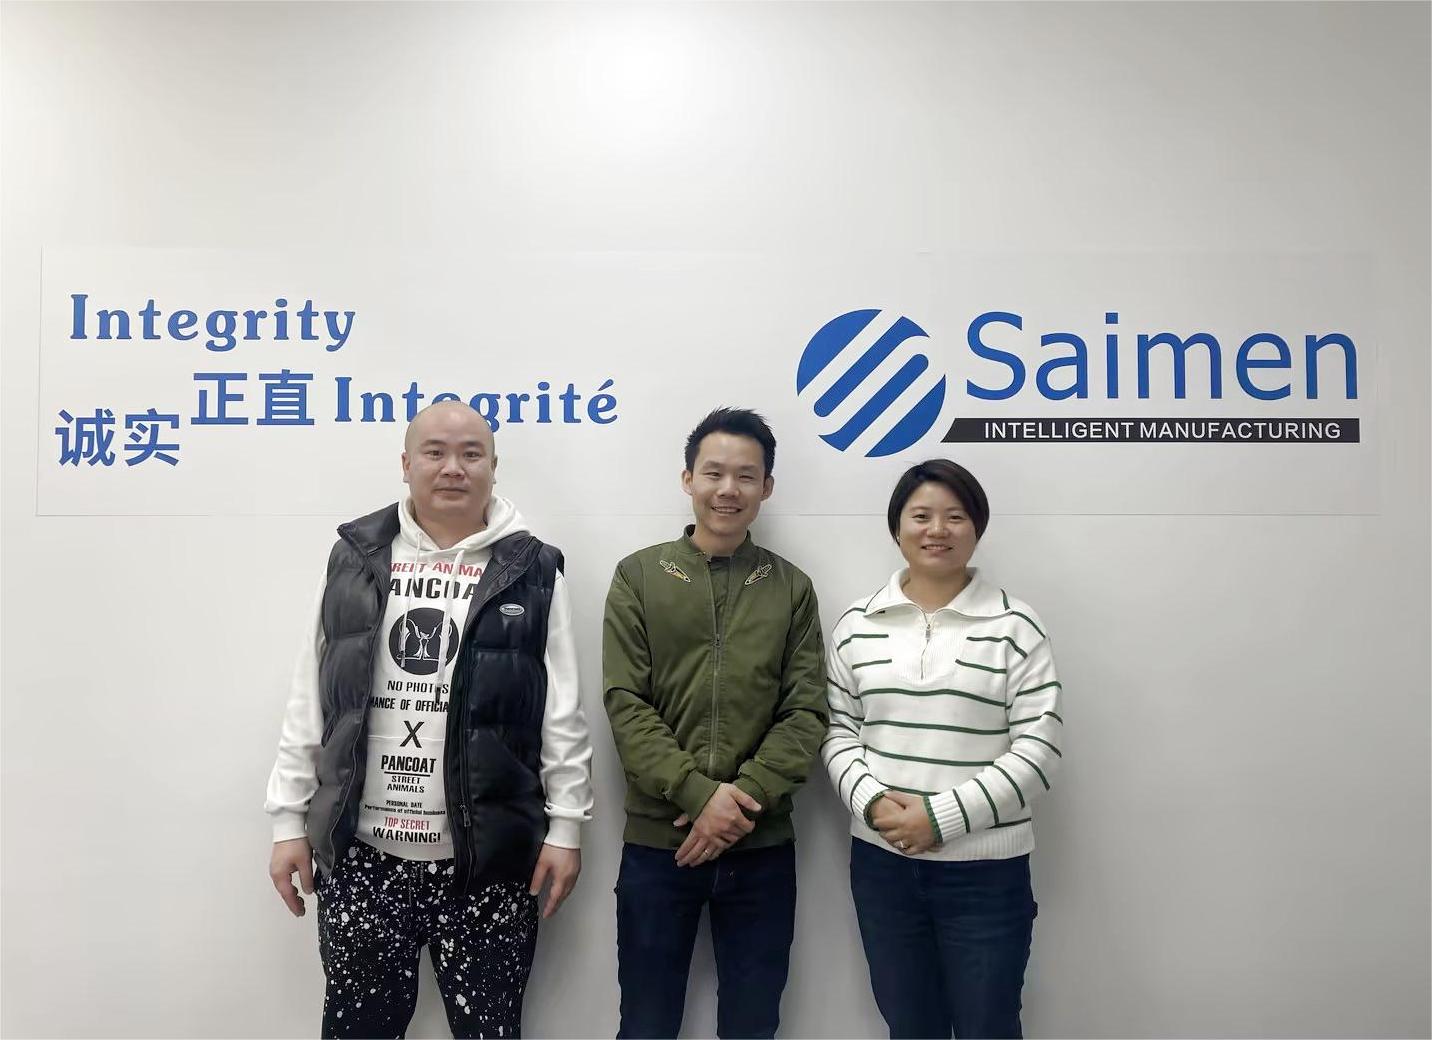 Das Saimen-Team mit besuchenden Kunden vor einer Wand, die das Engagement des Unternehmens für Integrität zeigt und auf erfolgreiche globale Partnerschaften hinweist.